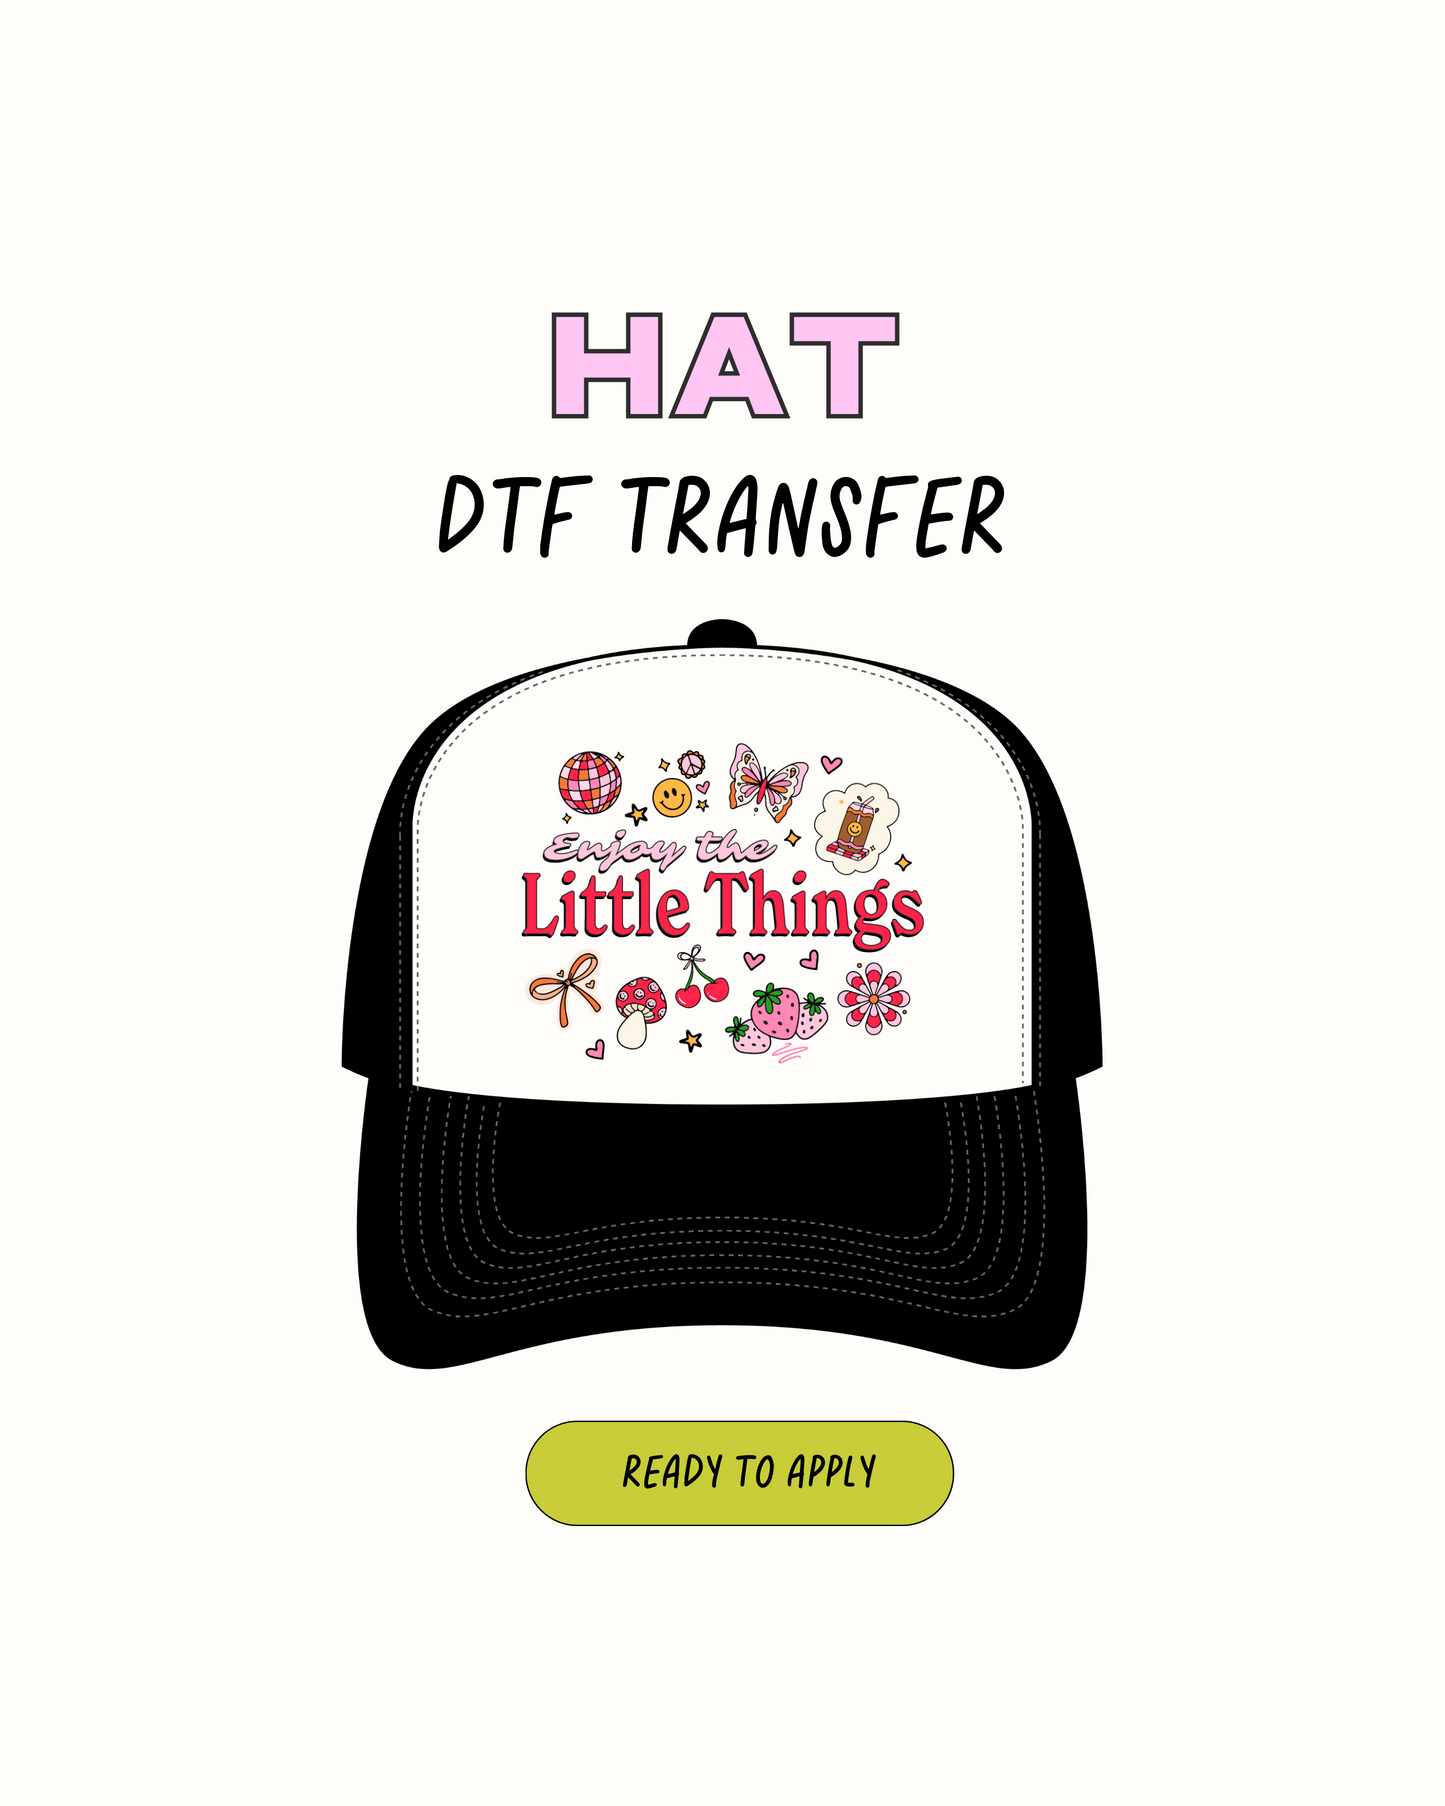 las pequeñas cosas - DTF Hat Transfers 